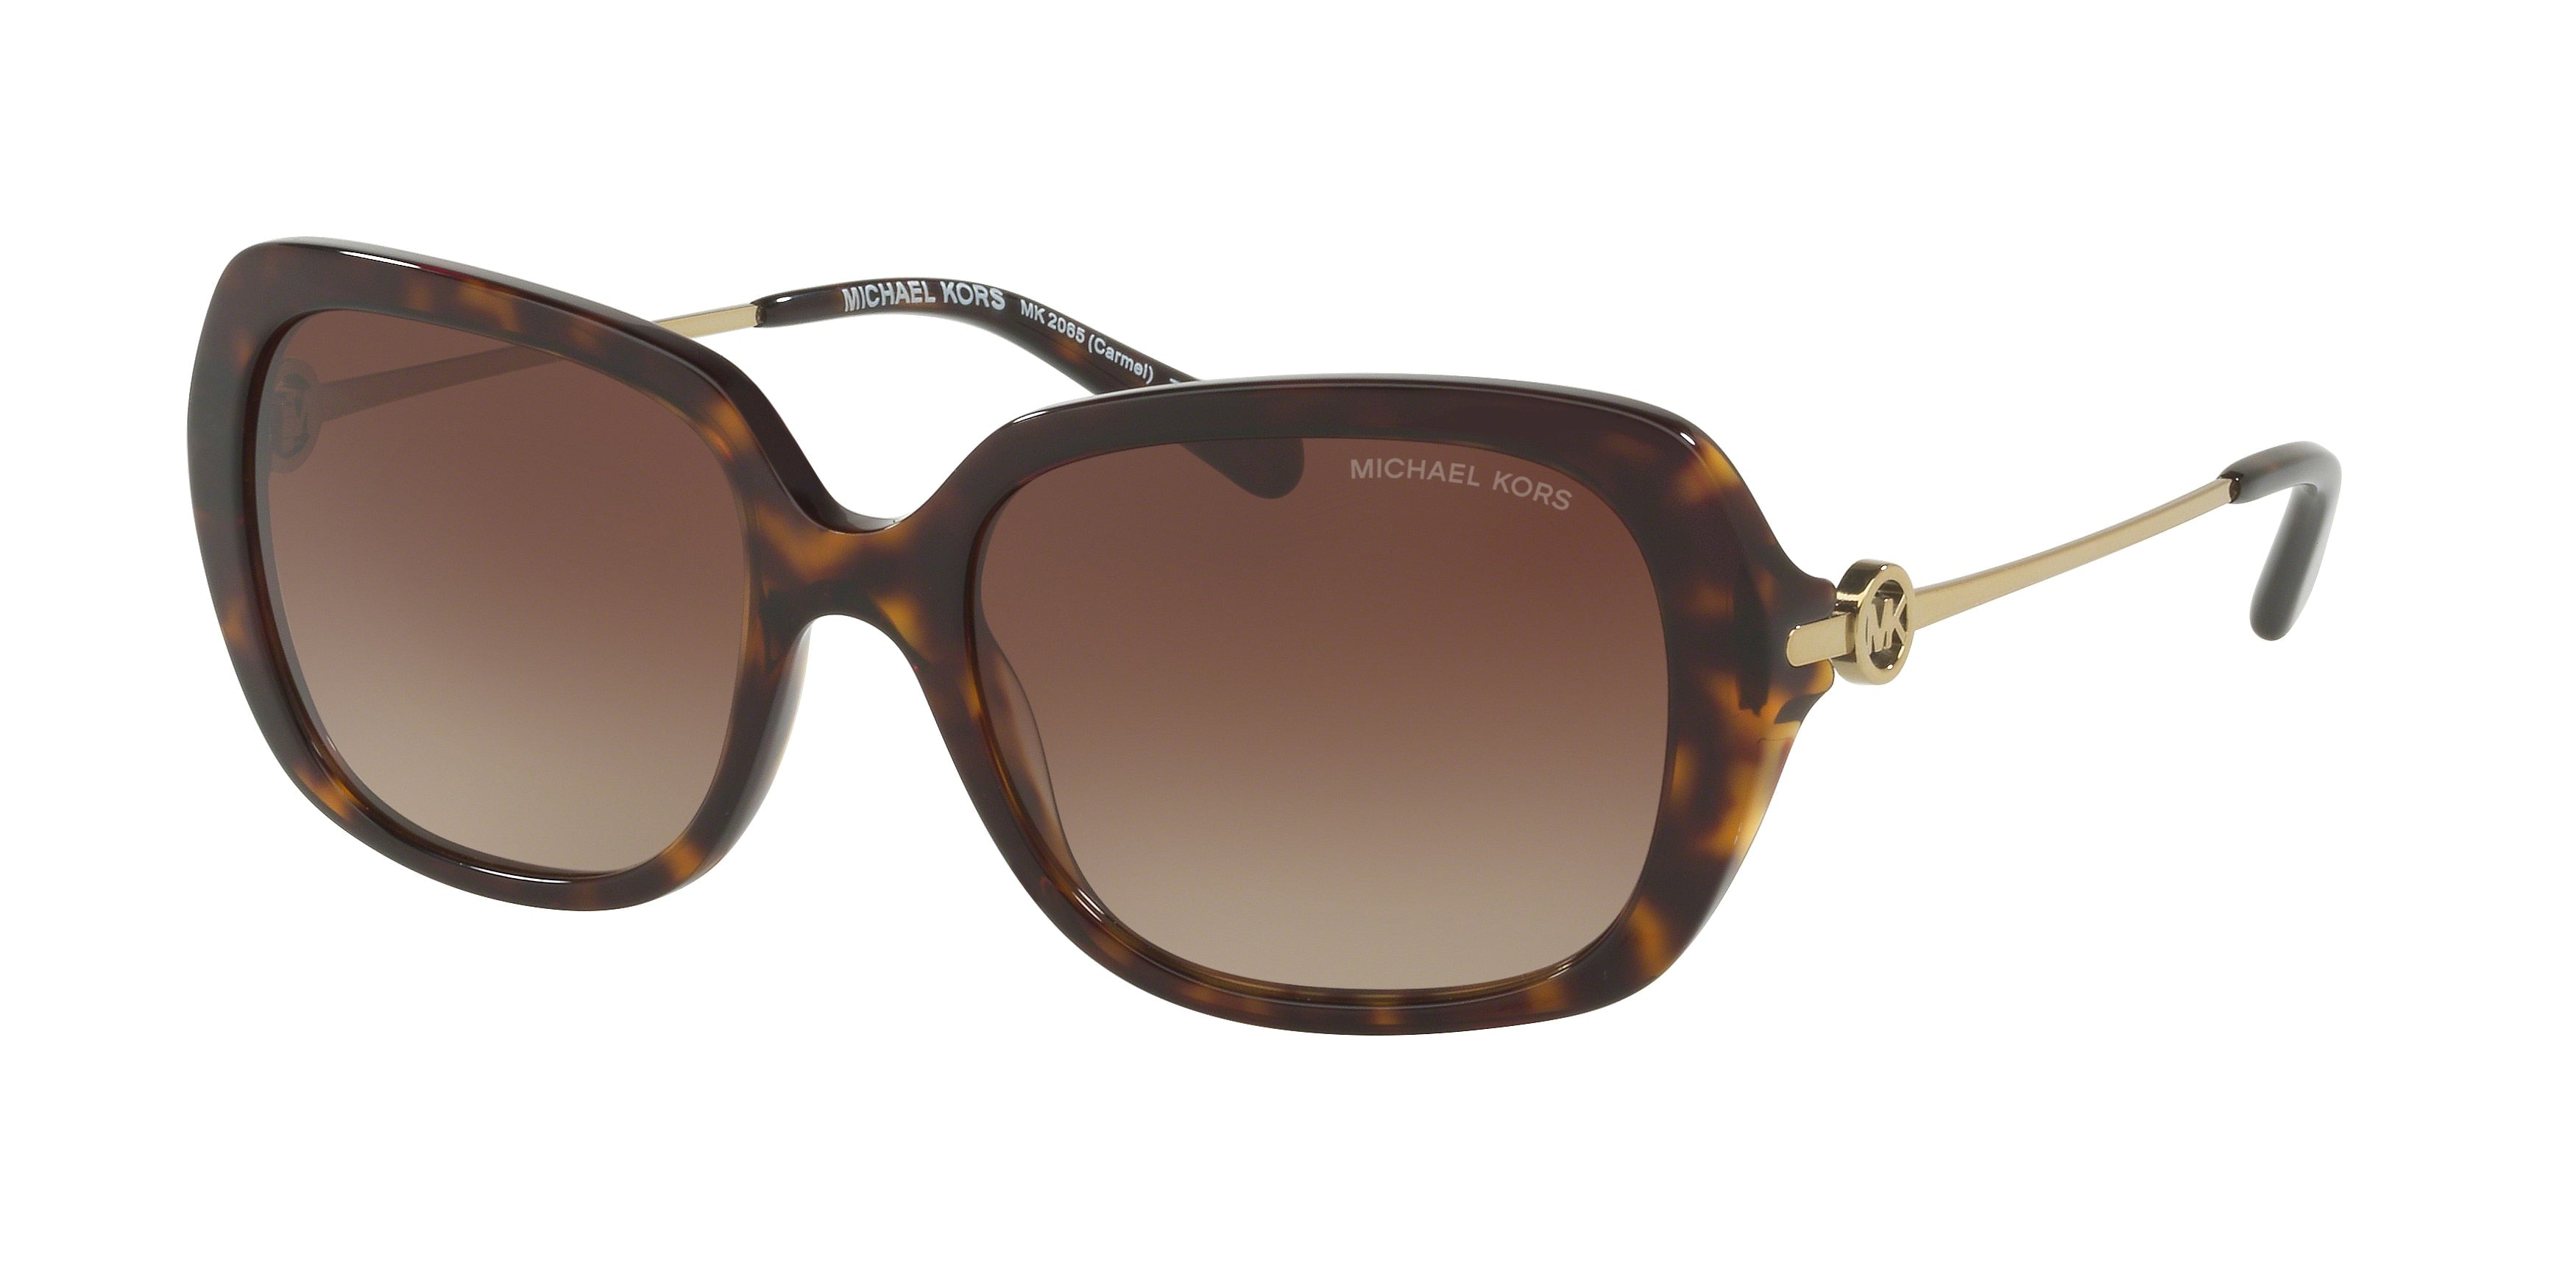 Michael Kors CARMEL MK2065 Rectangle Sunglasses  300613-Dark Tortoise 54-140-18 - Color Map Tortoise